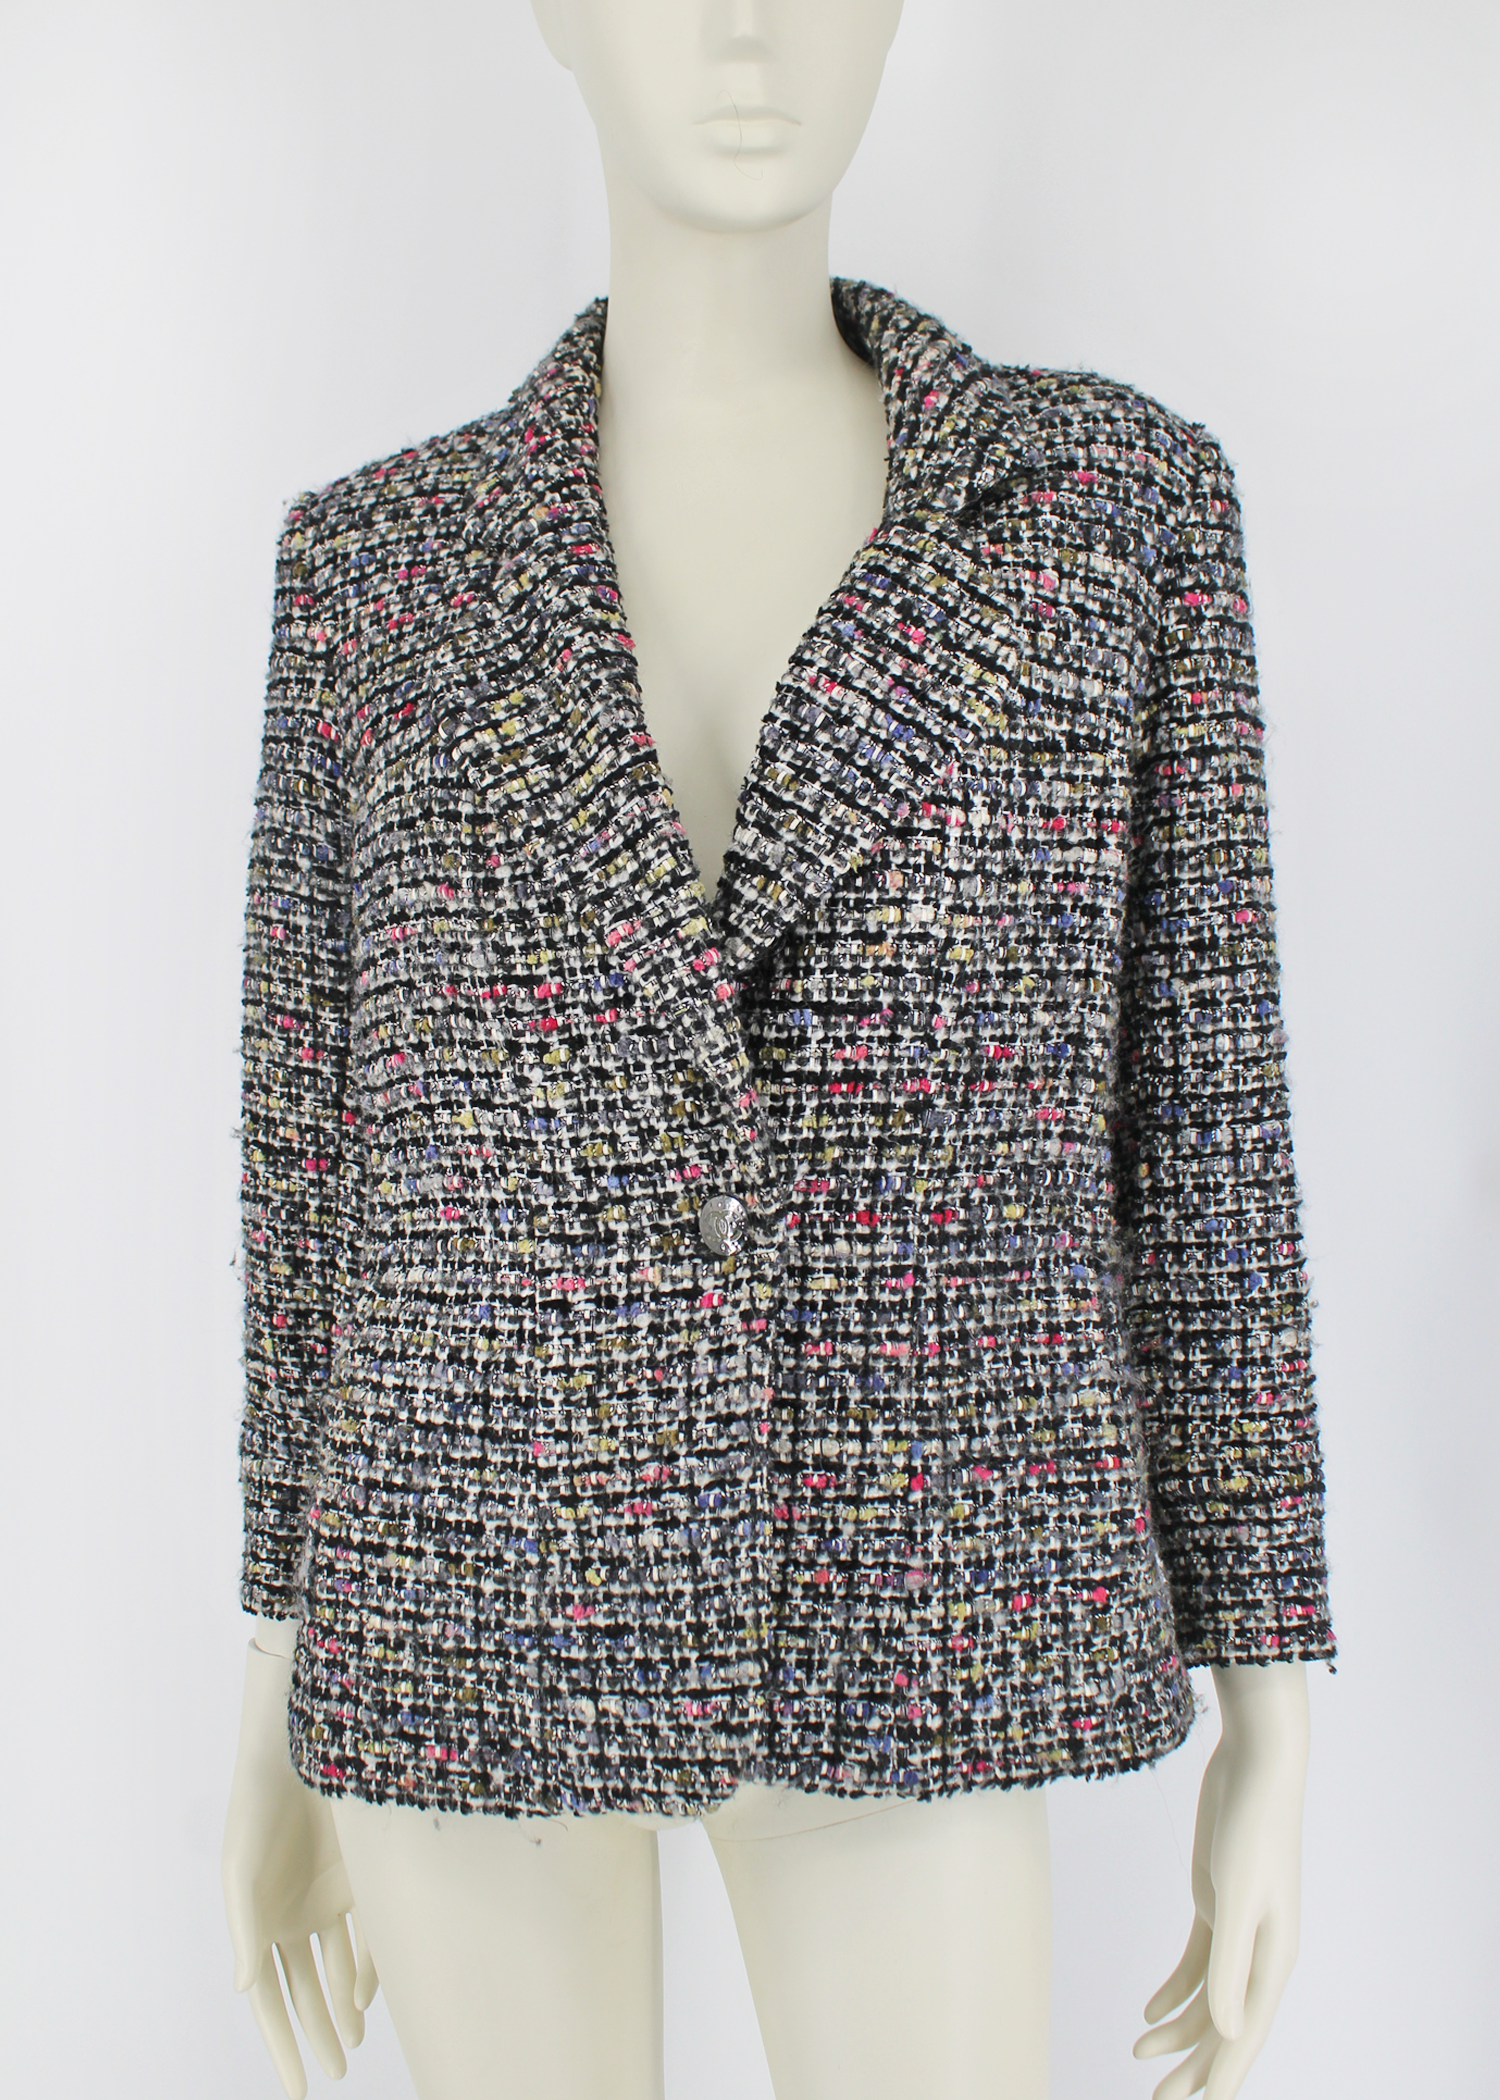 Spring 2012 Trend: The Tweed Jacket